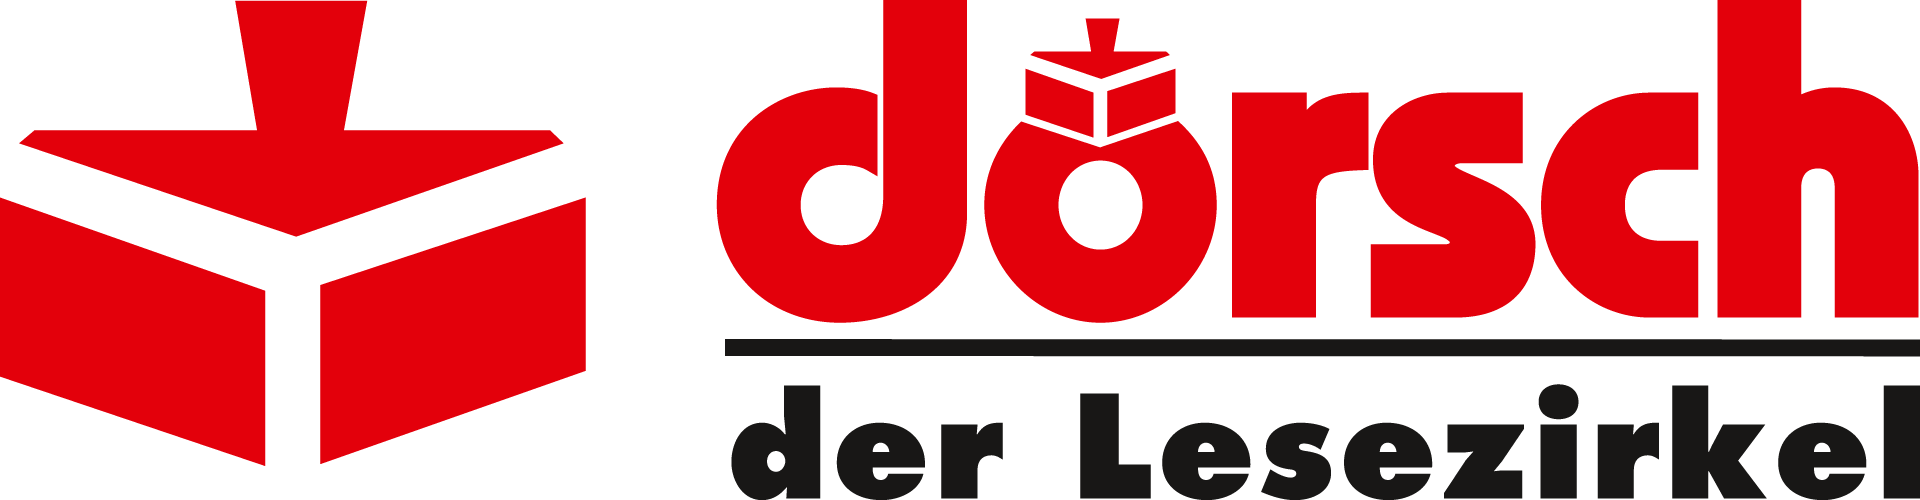 (c) Doersch.de